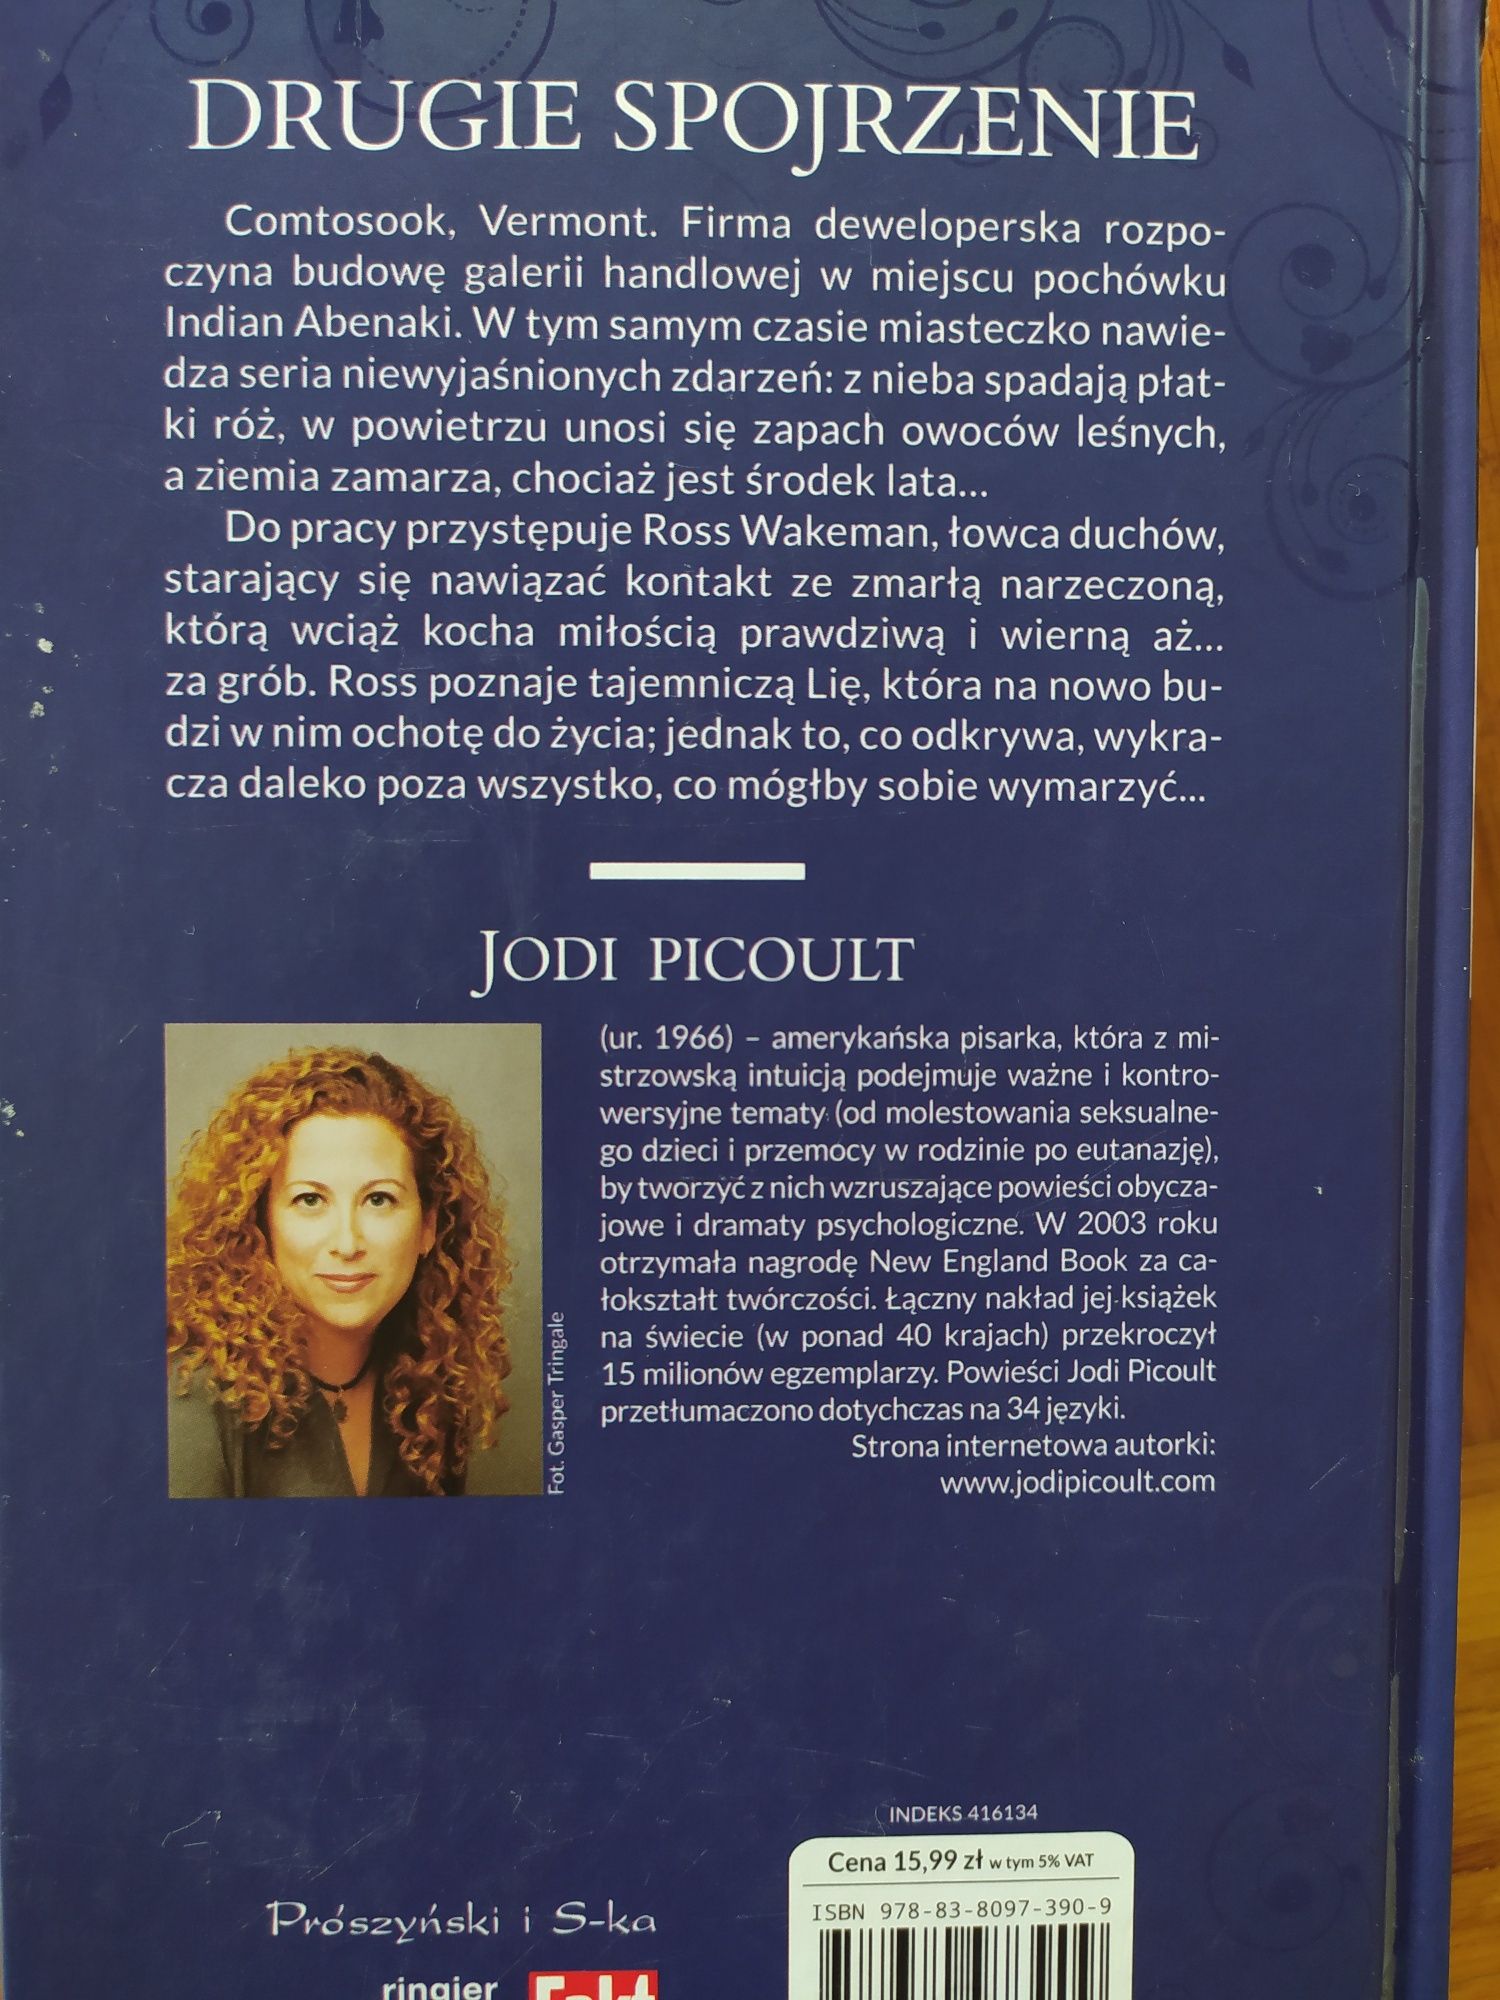 Jodi Picoult, Drugie spojrzenie